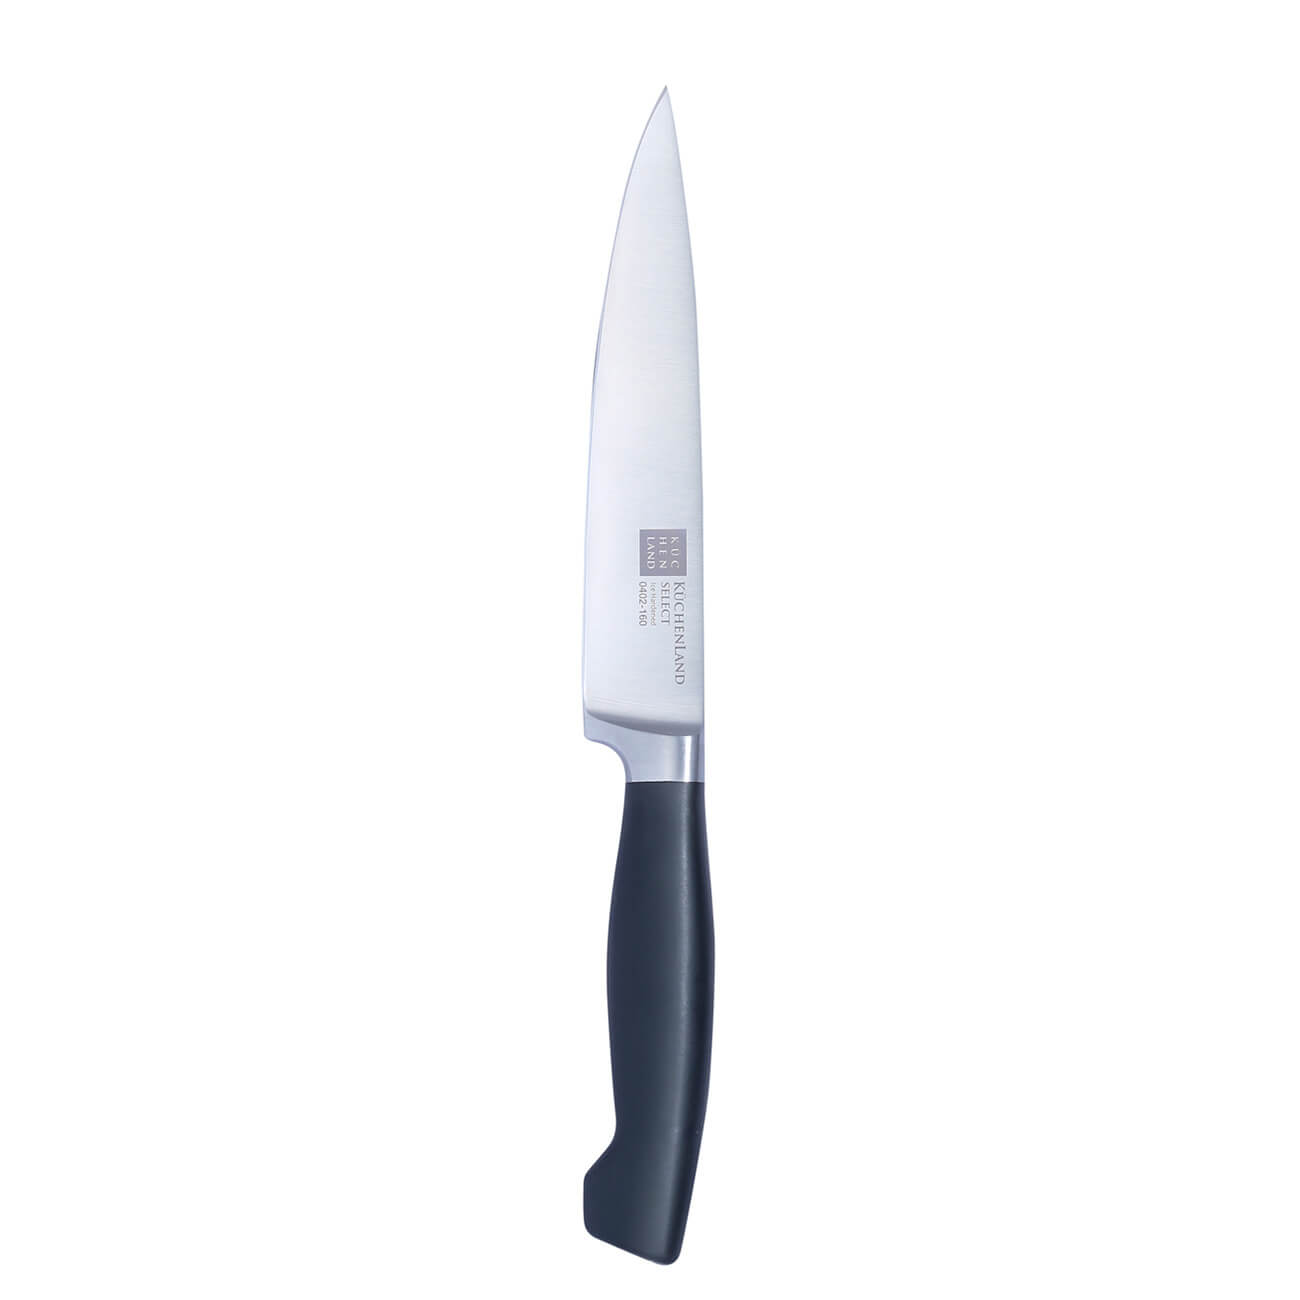 Kuchenland Нож для нарезки, 16 см, сталь/пластик, Select набор для выпечки 4 пр скалка венчик формы силикон сталь серый кролик и облако rabbit